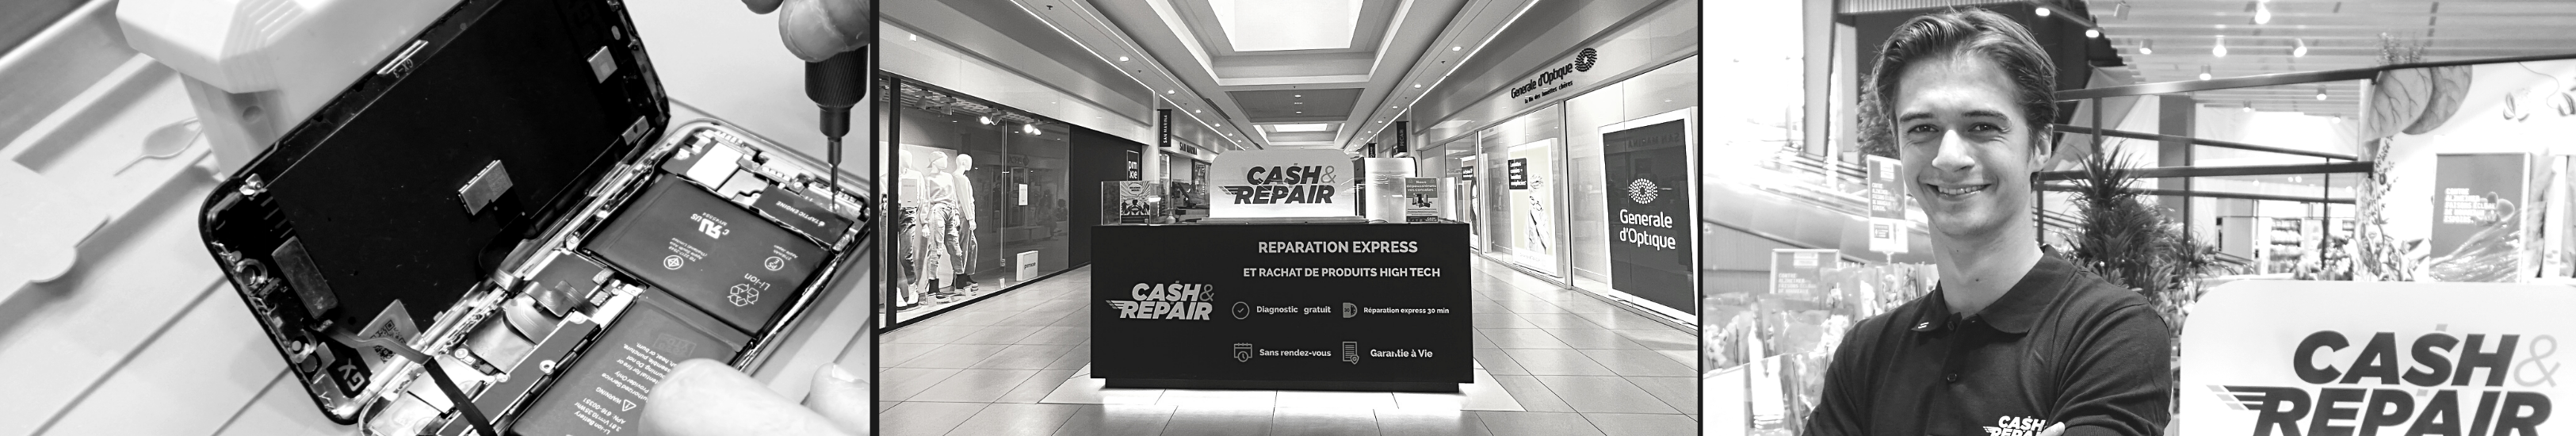 - Atelier de réparation Cash and Repair Basse-Goulaine